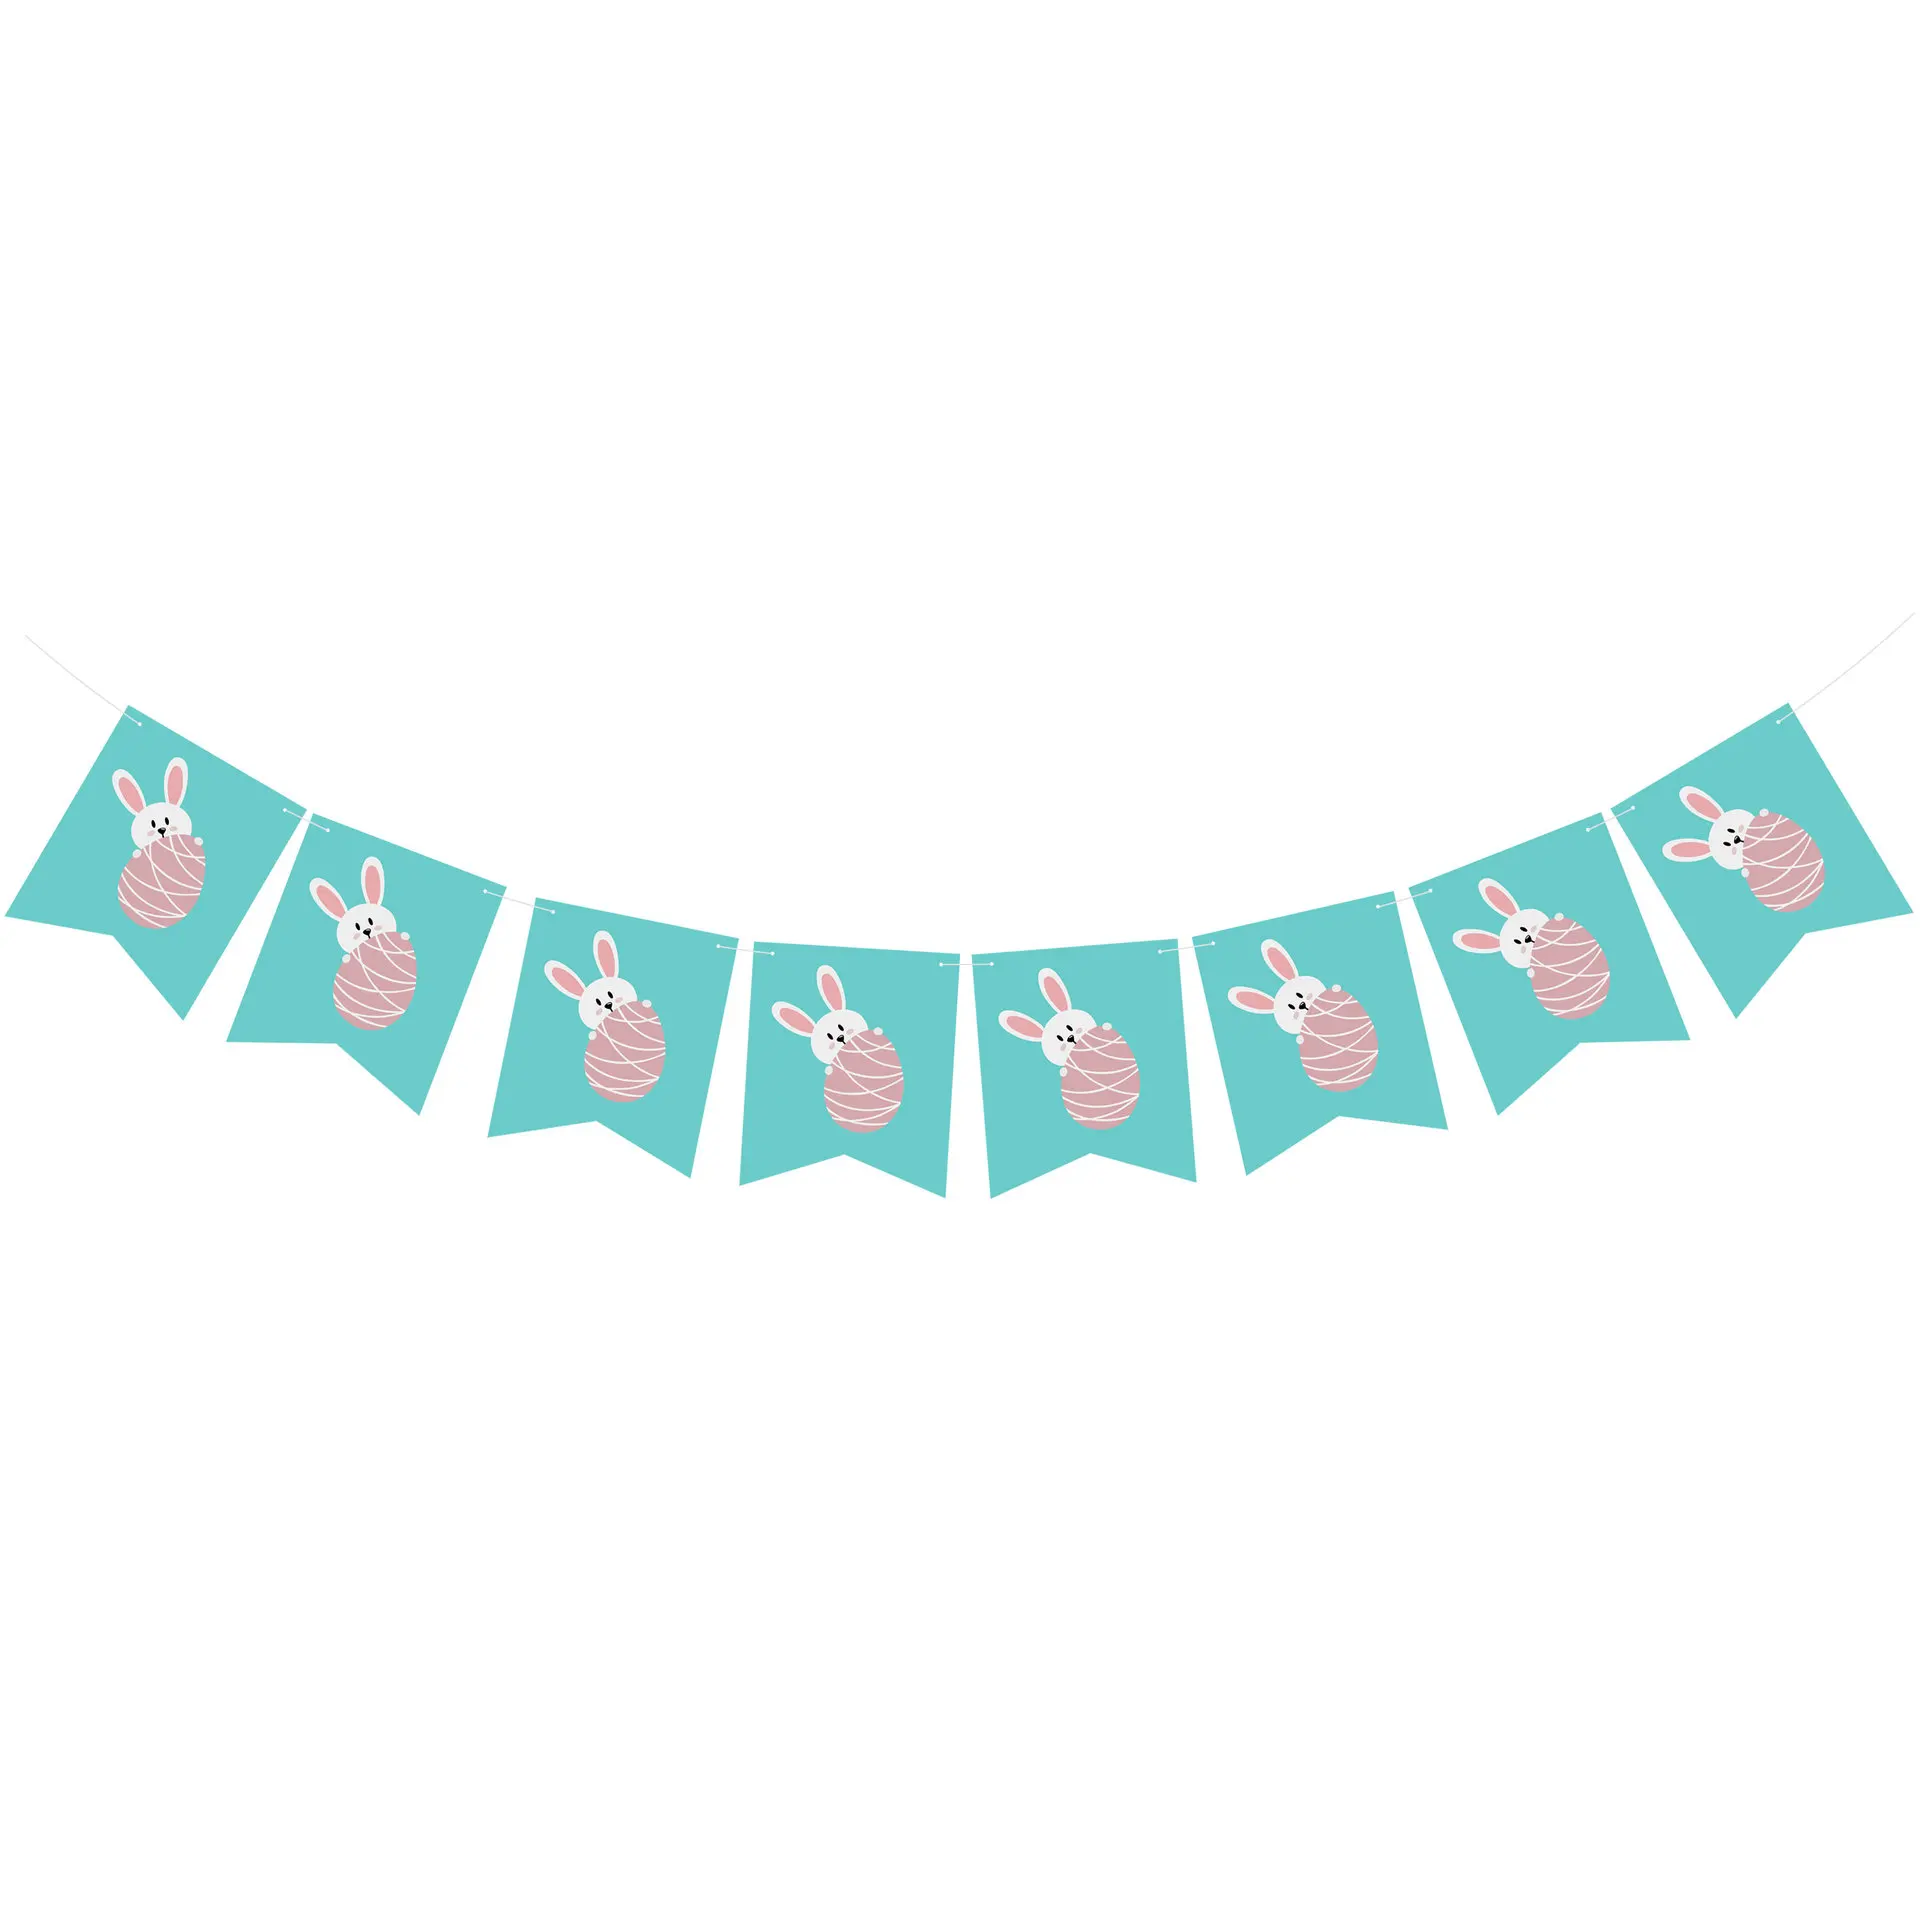 Мультфильм кролик яйцо баннер пасхальные украшения флаг день рождения праздник гелиевые шары пасхальные вечерние торт карты наклейки